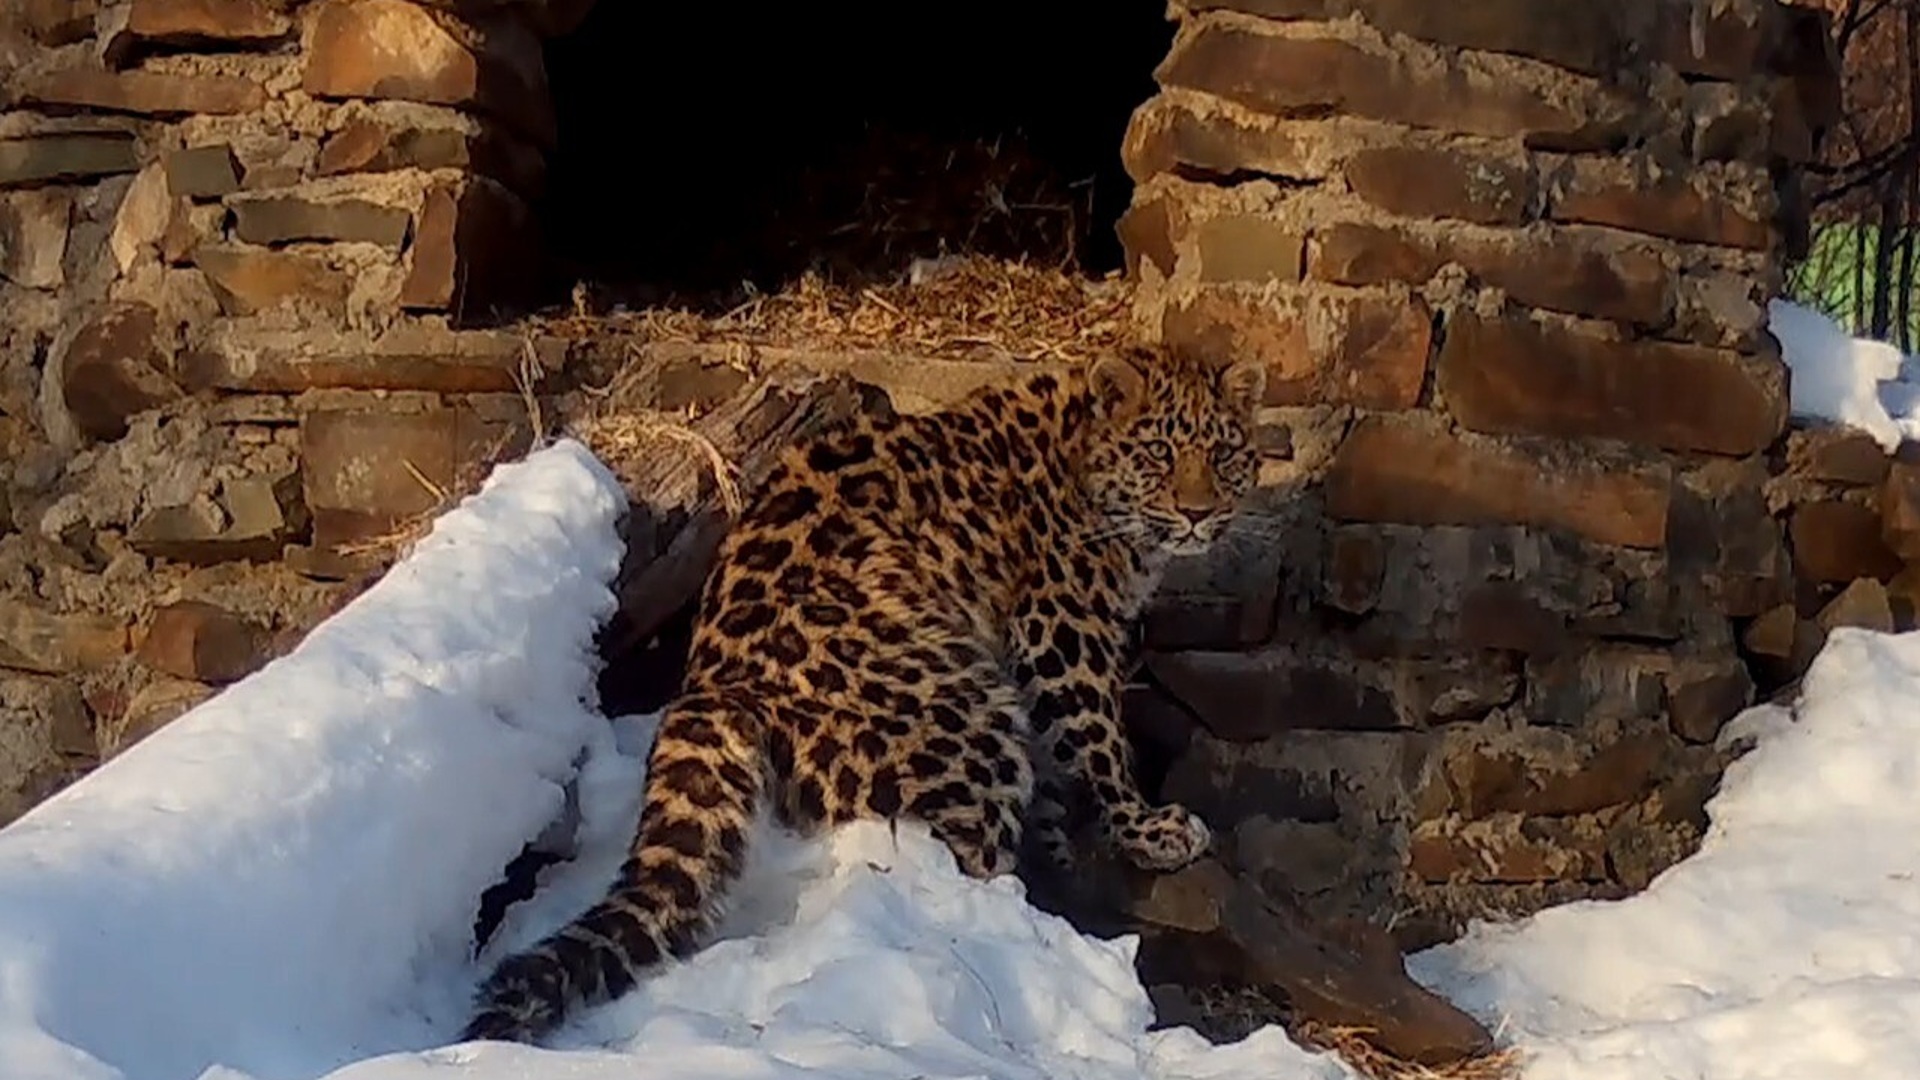 Дальневосточный леопардовый кот